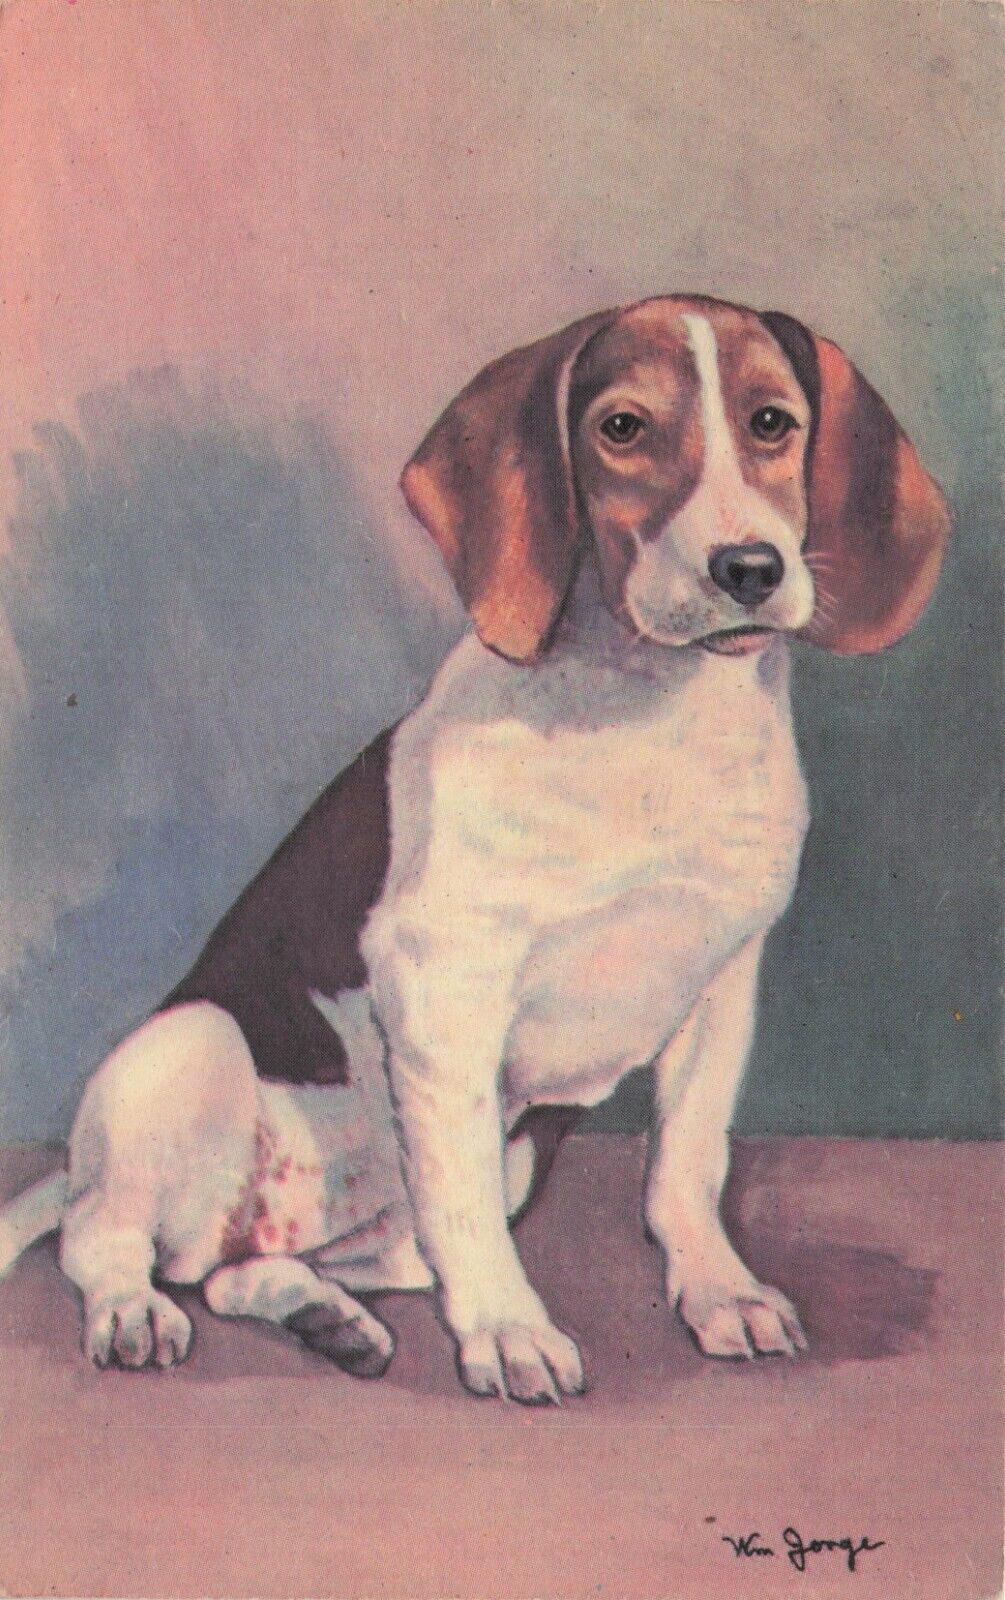 Artist Signed William Jorge Seated Beagle Dog Hound Alma Vintage Postcard